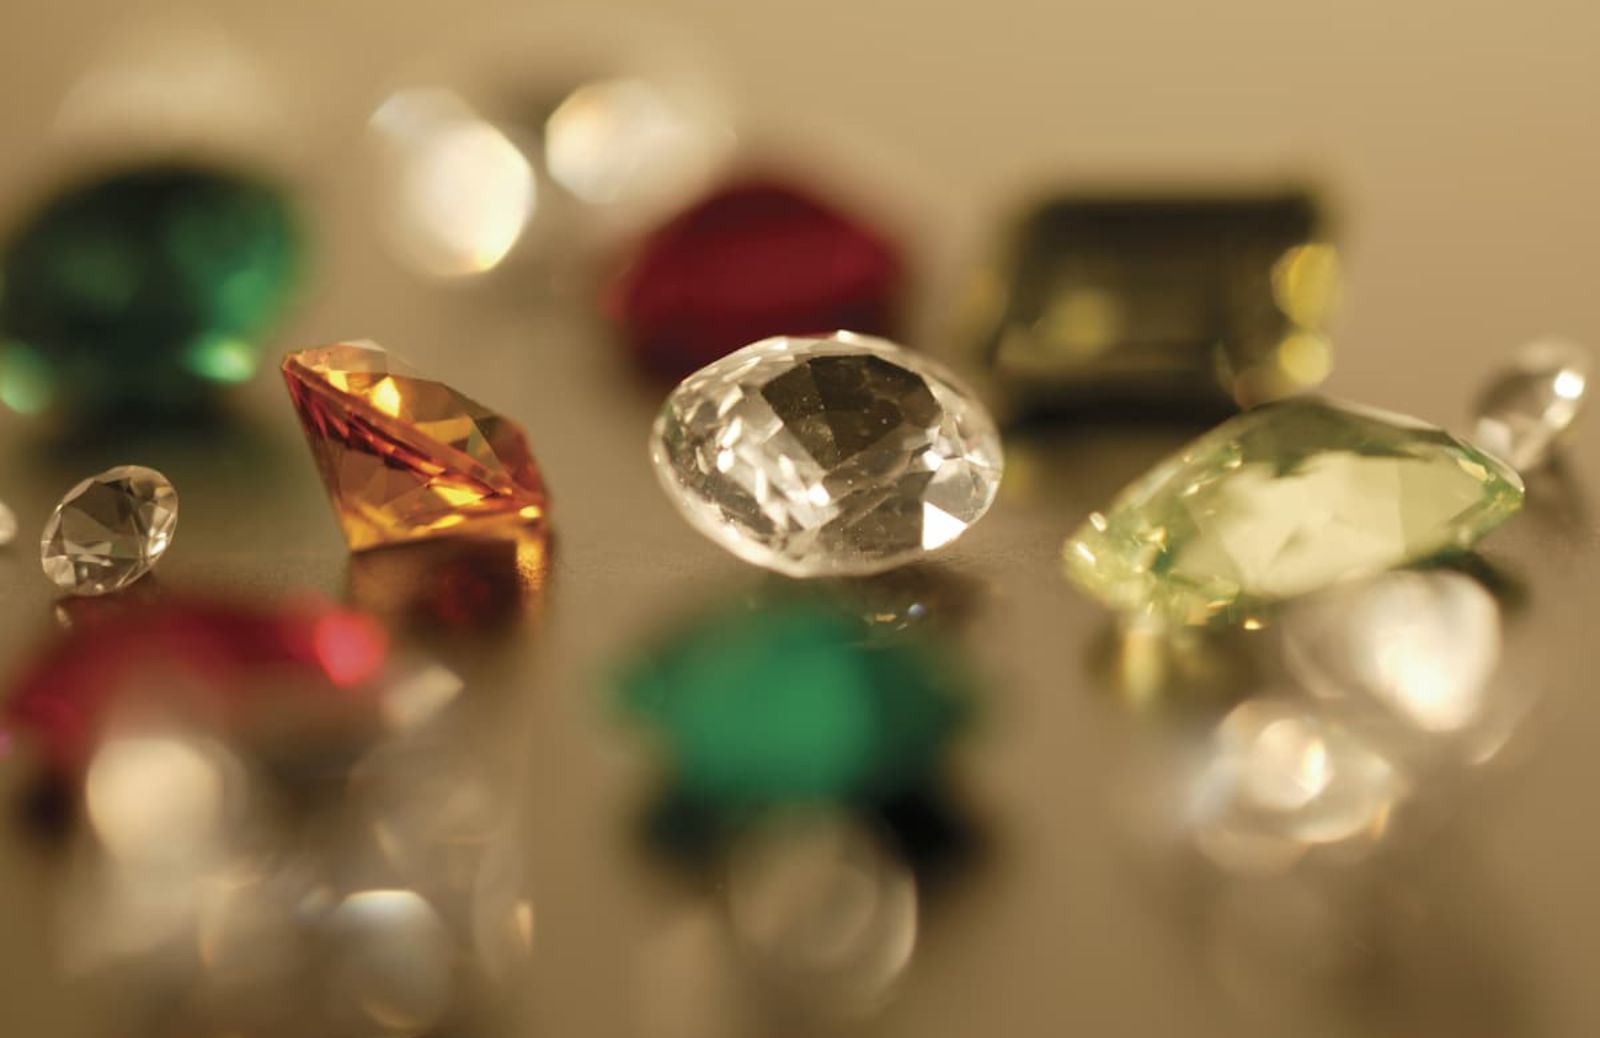 Glossario dei tagli di gemme e pietre preziose